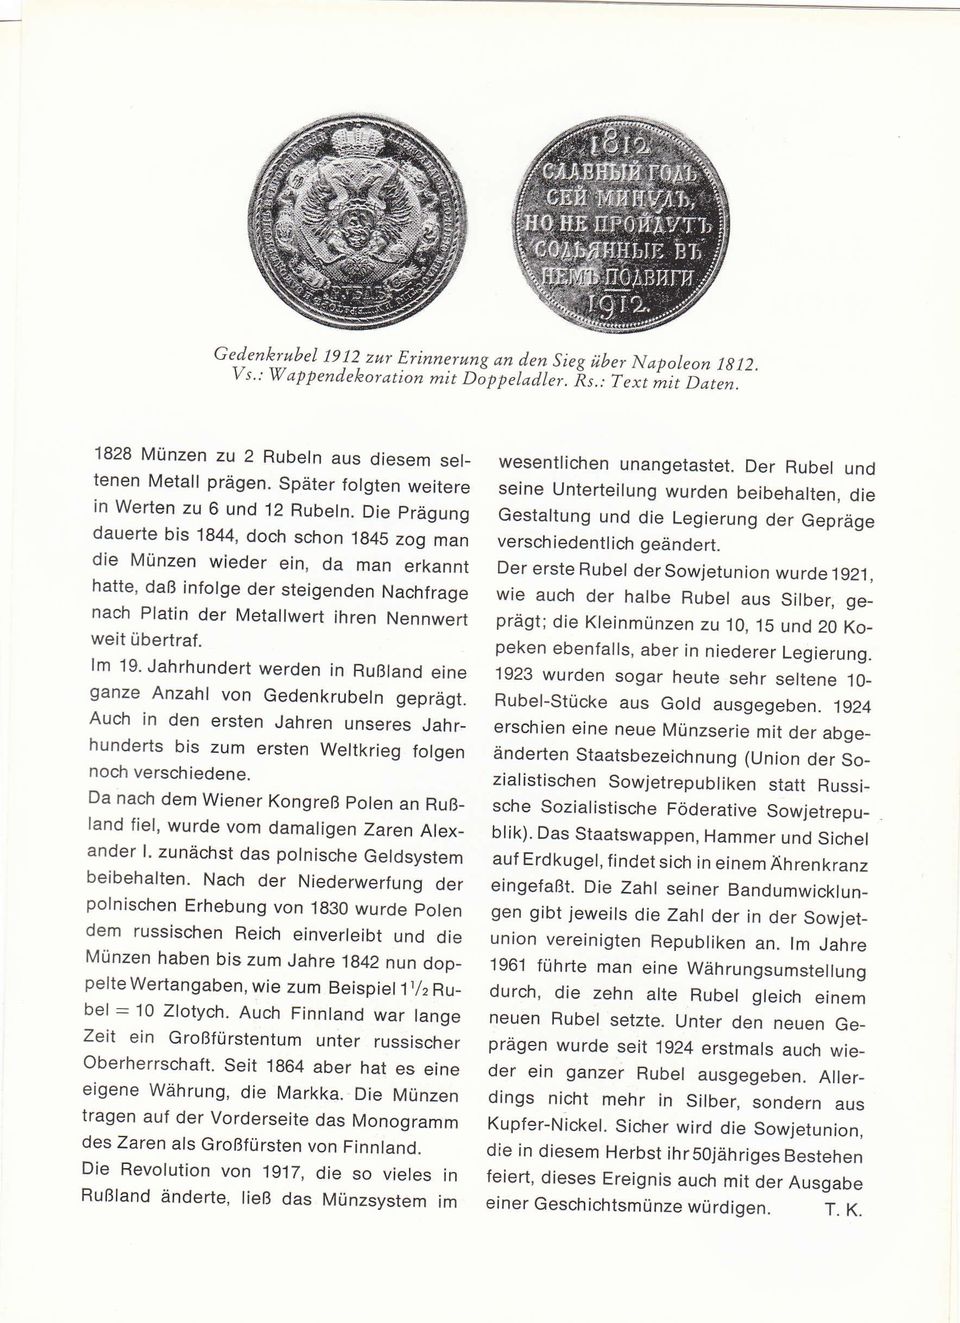 Die prägung dauerte bis 1844, doch schon 1g45 zog man die Münzen wieder ein, da man erkannt hatte, daß infolge der steigenden Nachfrage nach Platin der Metallwert ihren Nennwert weit übertraf. lm 19.